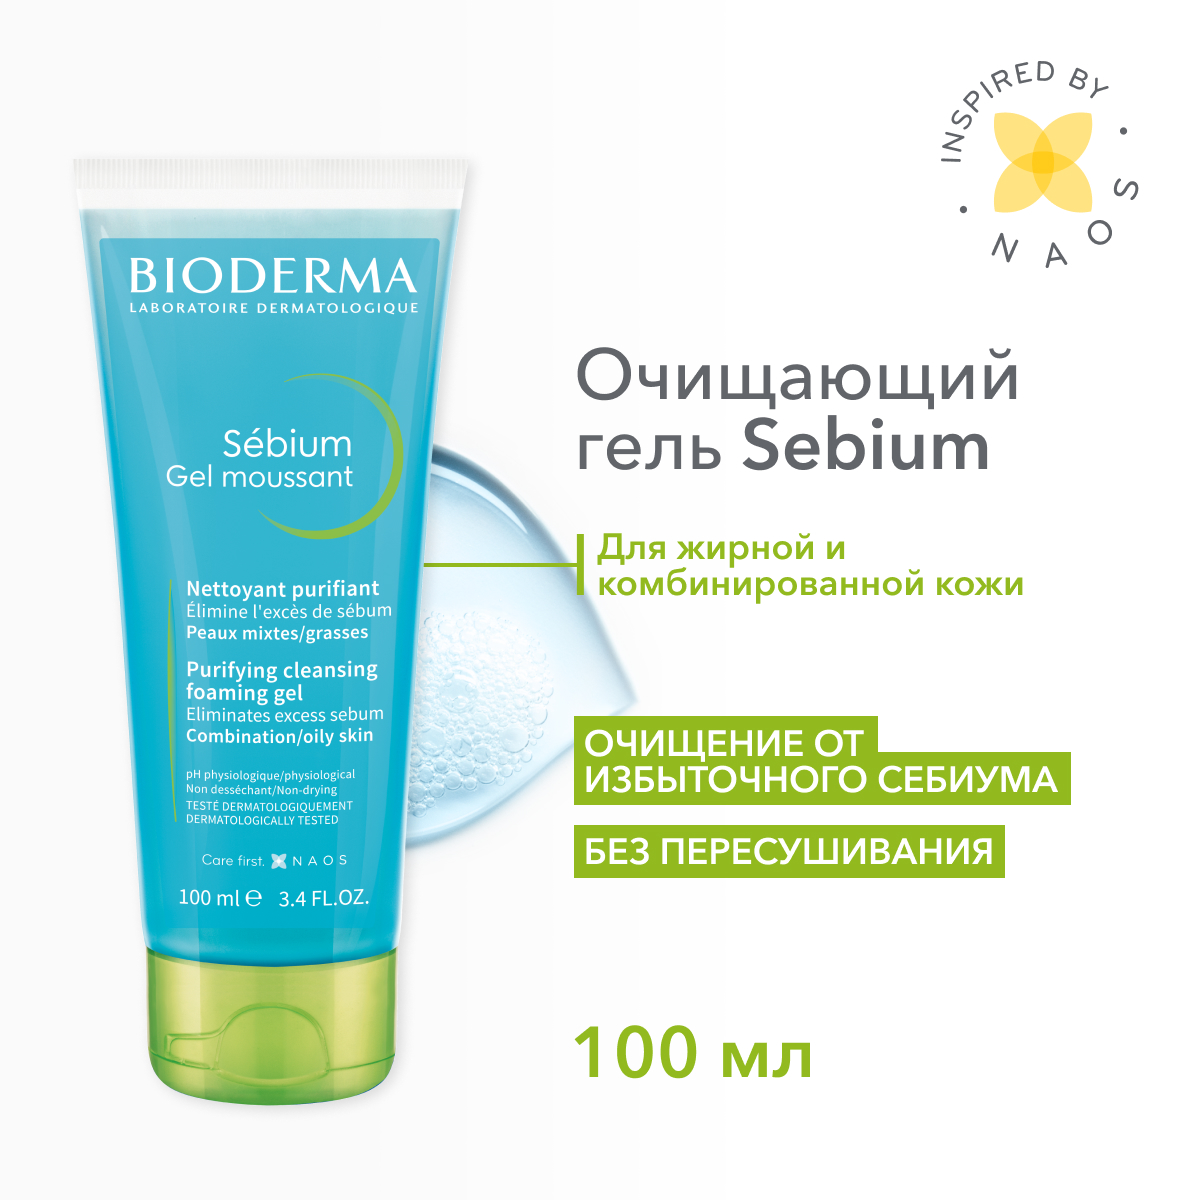 Гель для лица Bioderma Sebium очищающий, для жирной и проблемной кожи 100 мл - отзывы покупателей на Мегамаркет | гель для лица 28666I